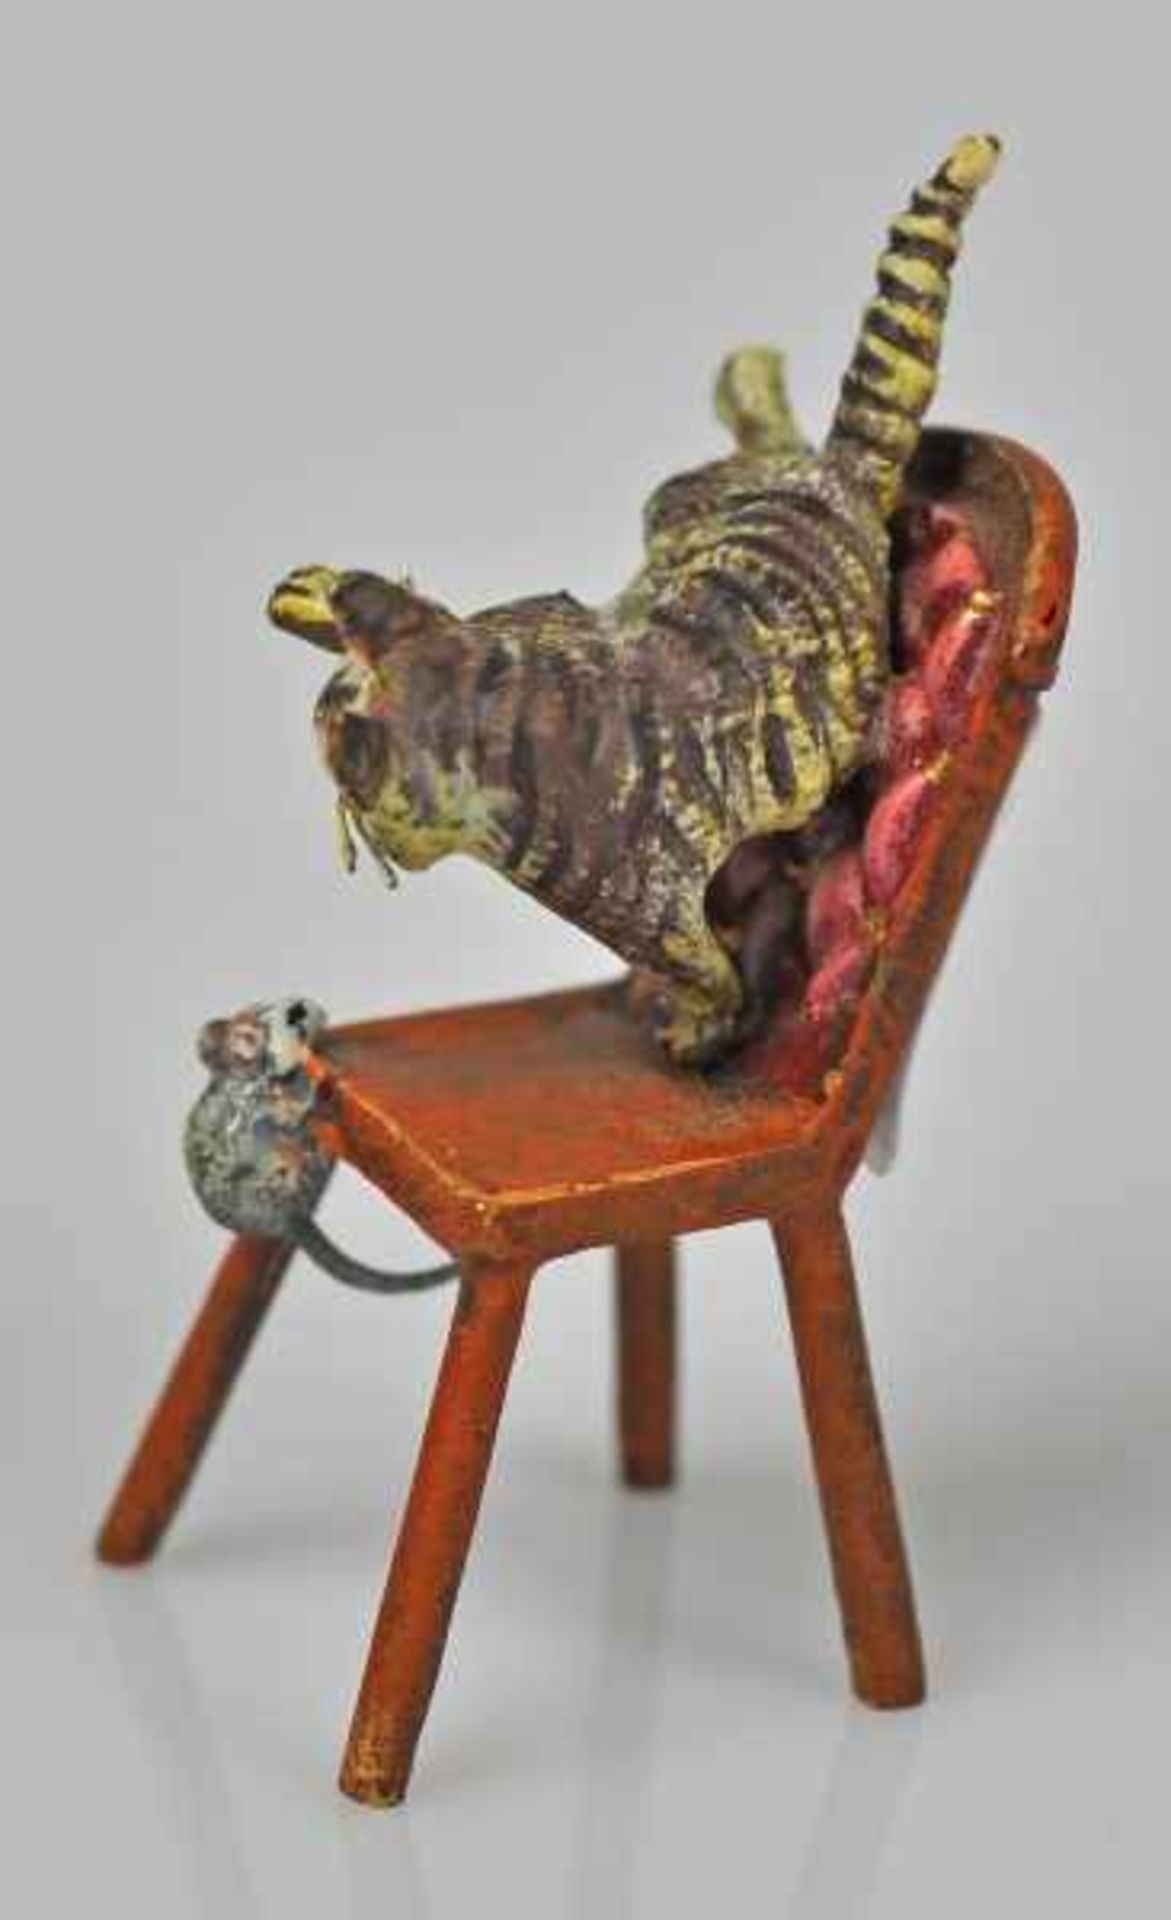 KATZE eine Maus jagend, auf Stuhl, Wiener Bronze, gemarkt u. bez. Bermann Wien, H 5cm - Image 3 of 5